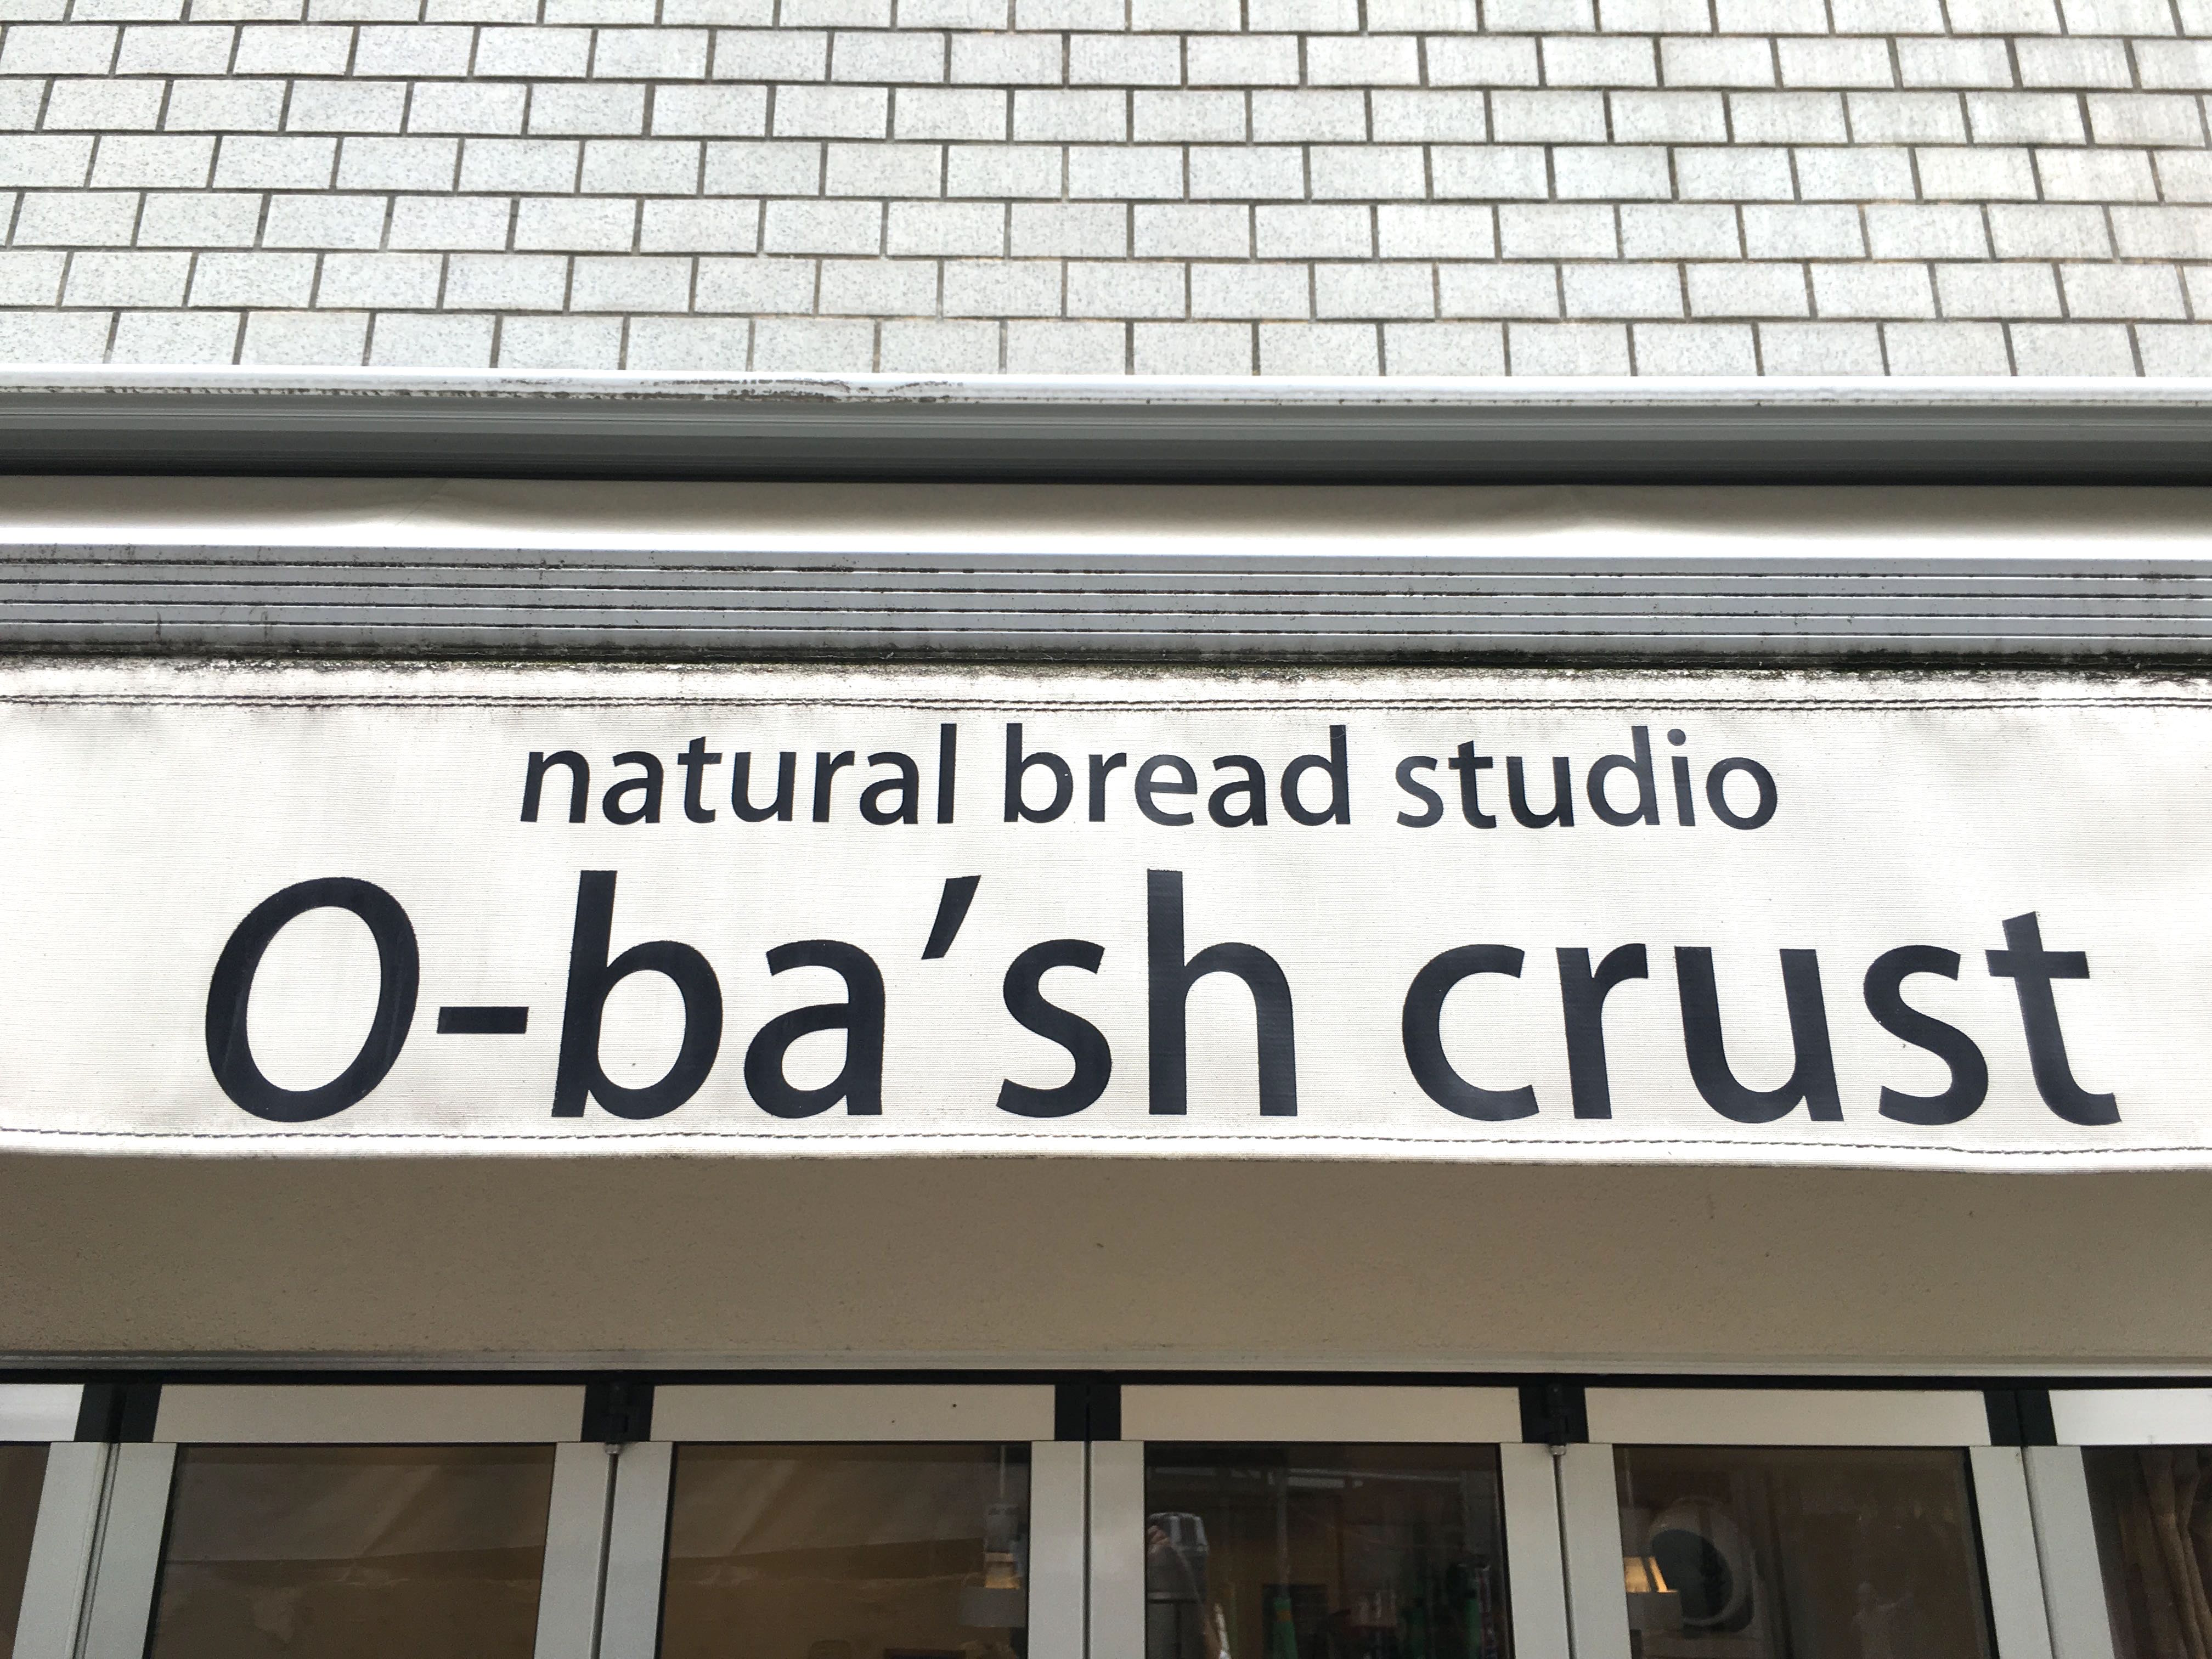 o-bash crust 看板